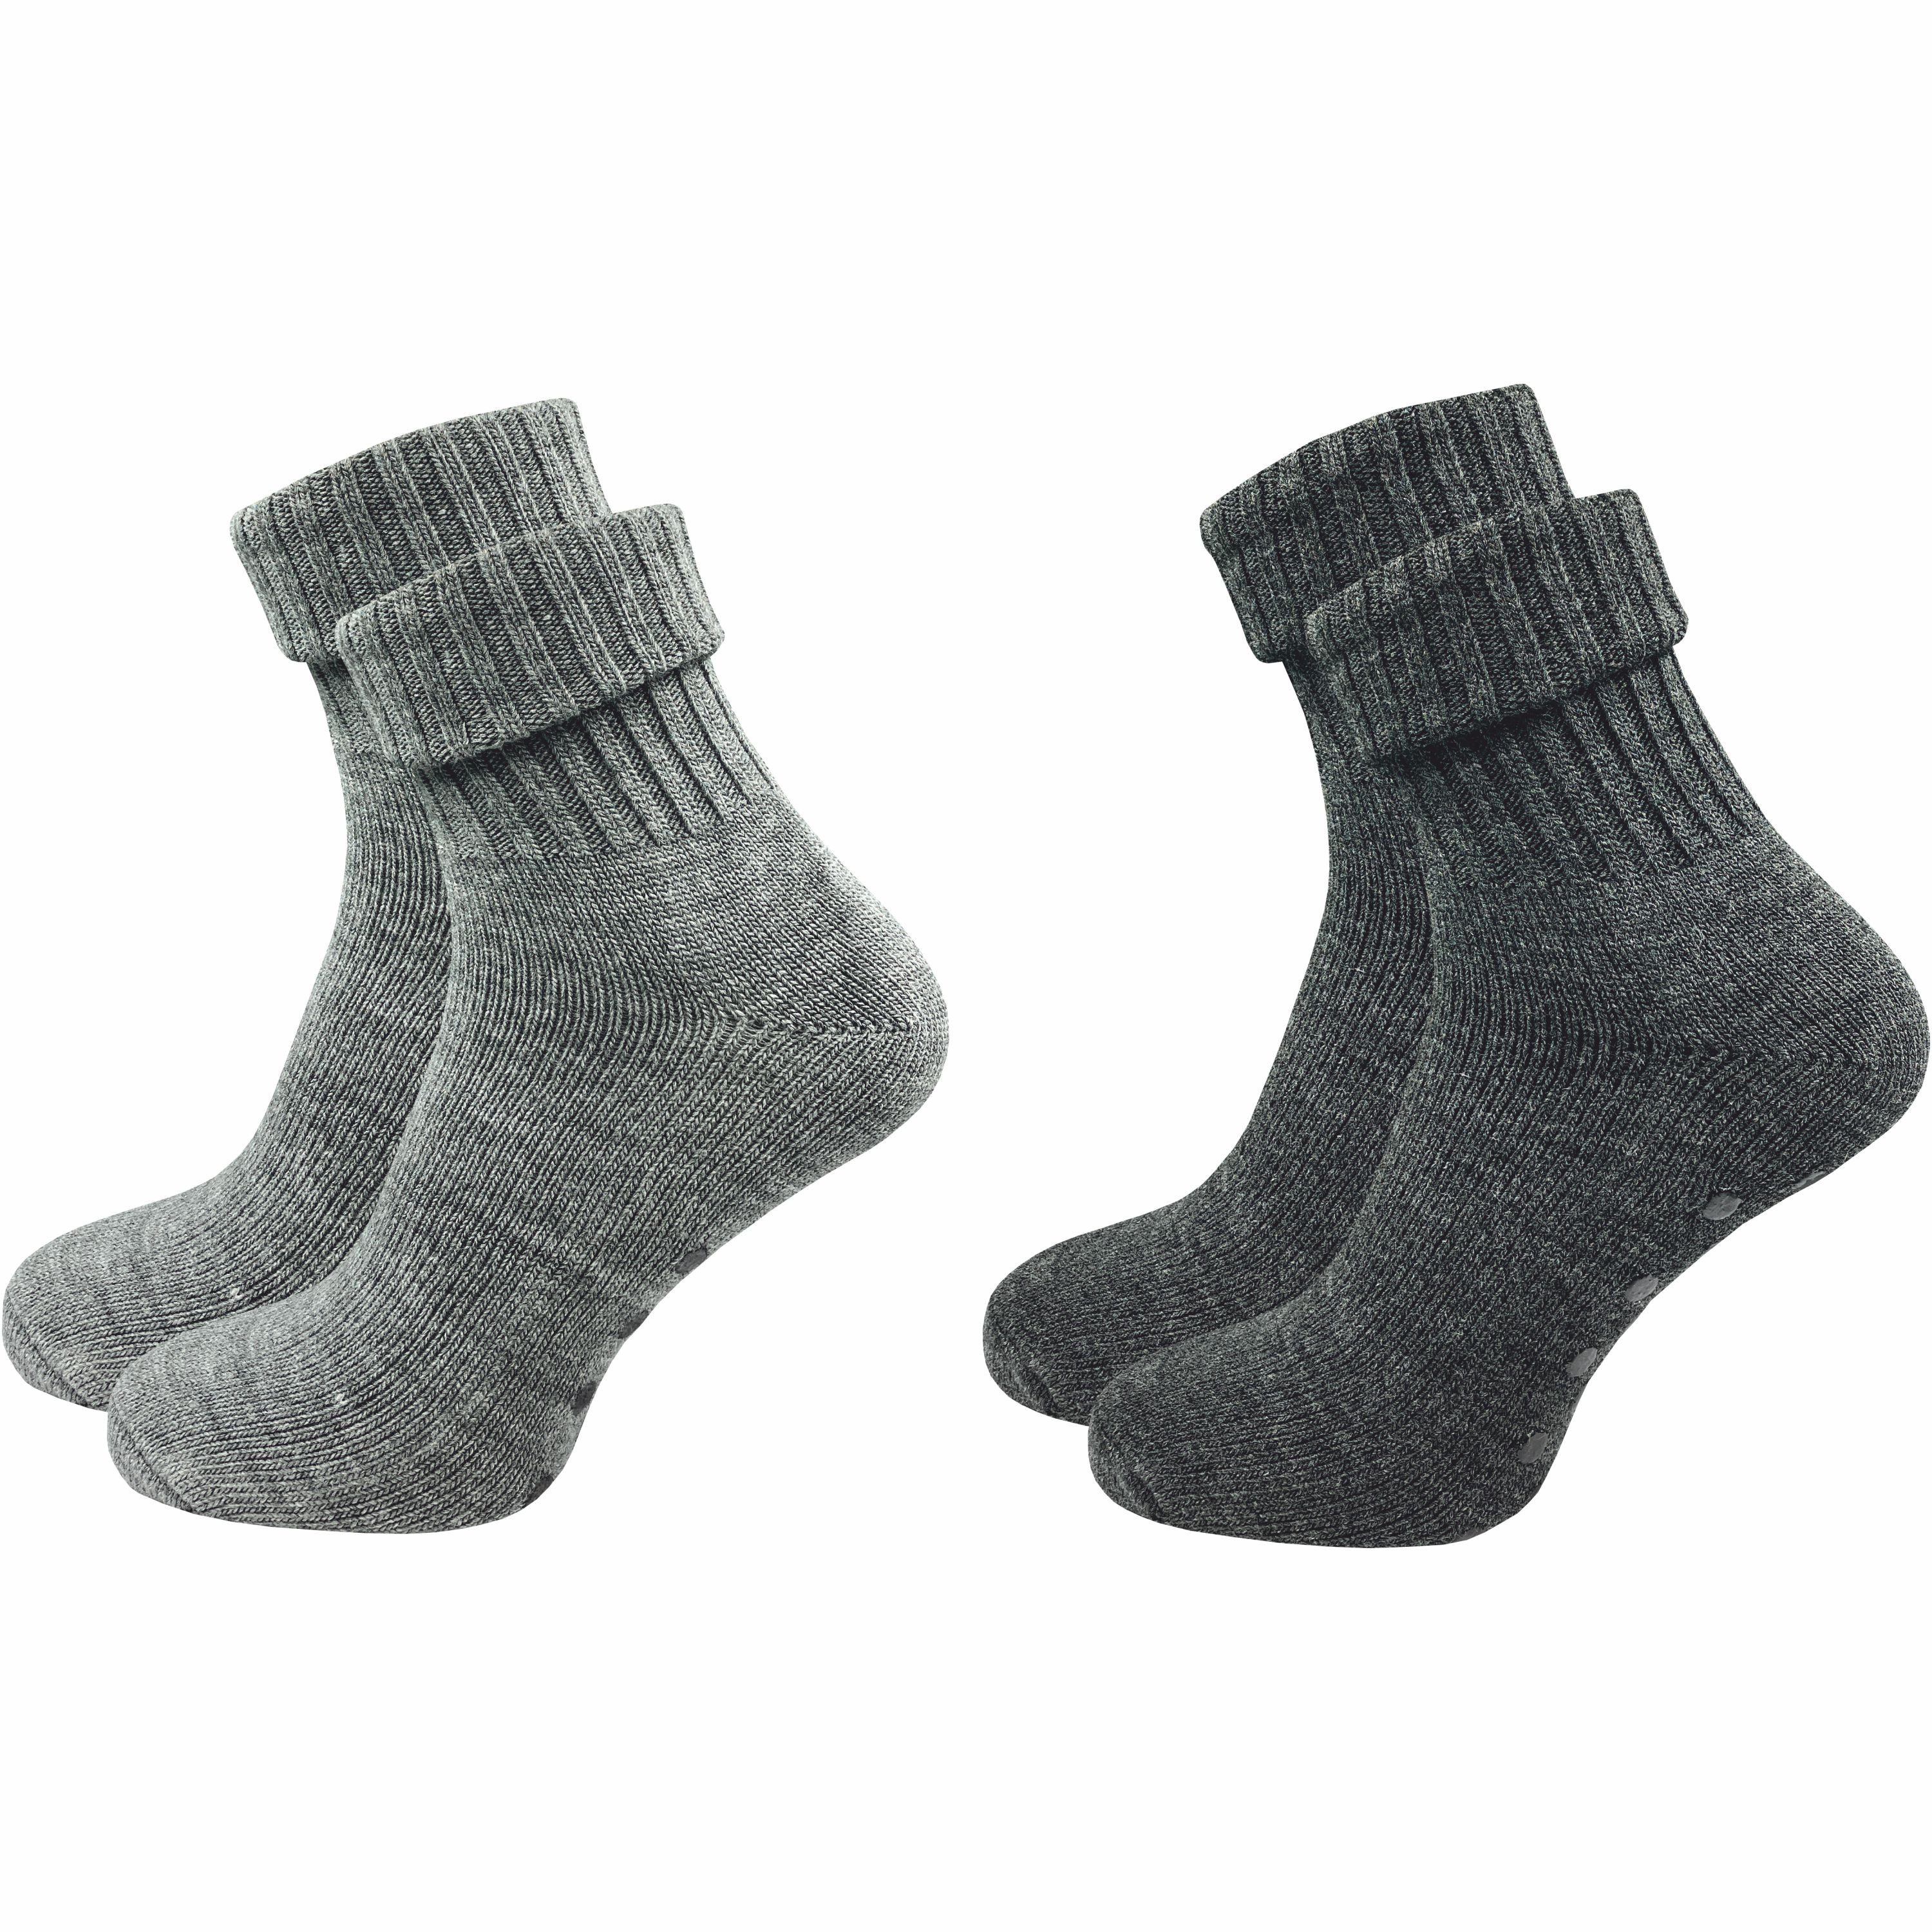 GAWILO ABS-Socken für Damen aus Wolle für extra warme Füße, Stoppersocken (2 Paar) Rutschfeste Hausschuhsocken, Weiche & kuschlige Socken mit Noppen grau & dunkelgrau